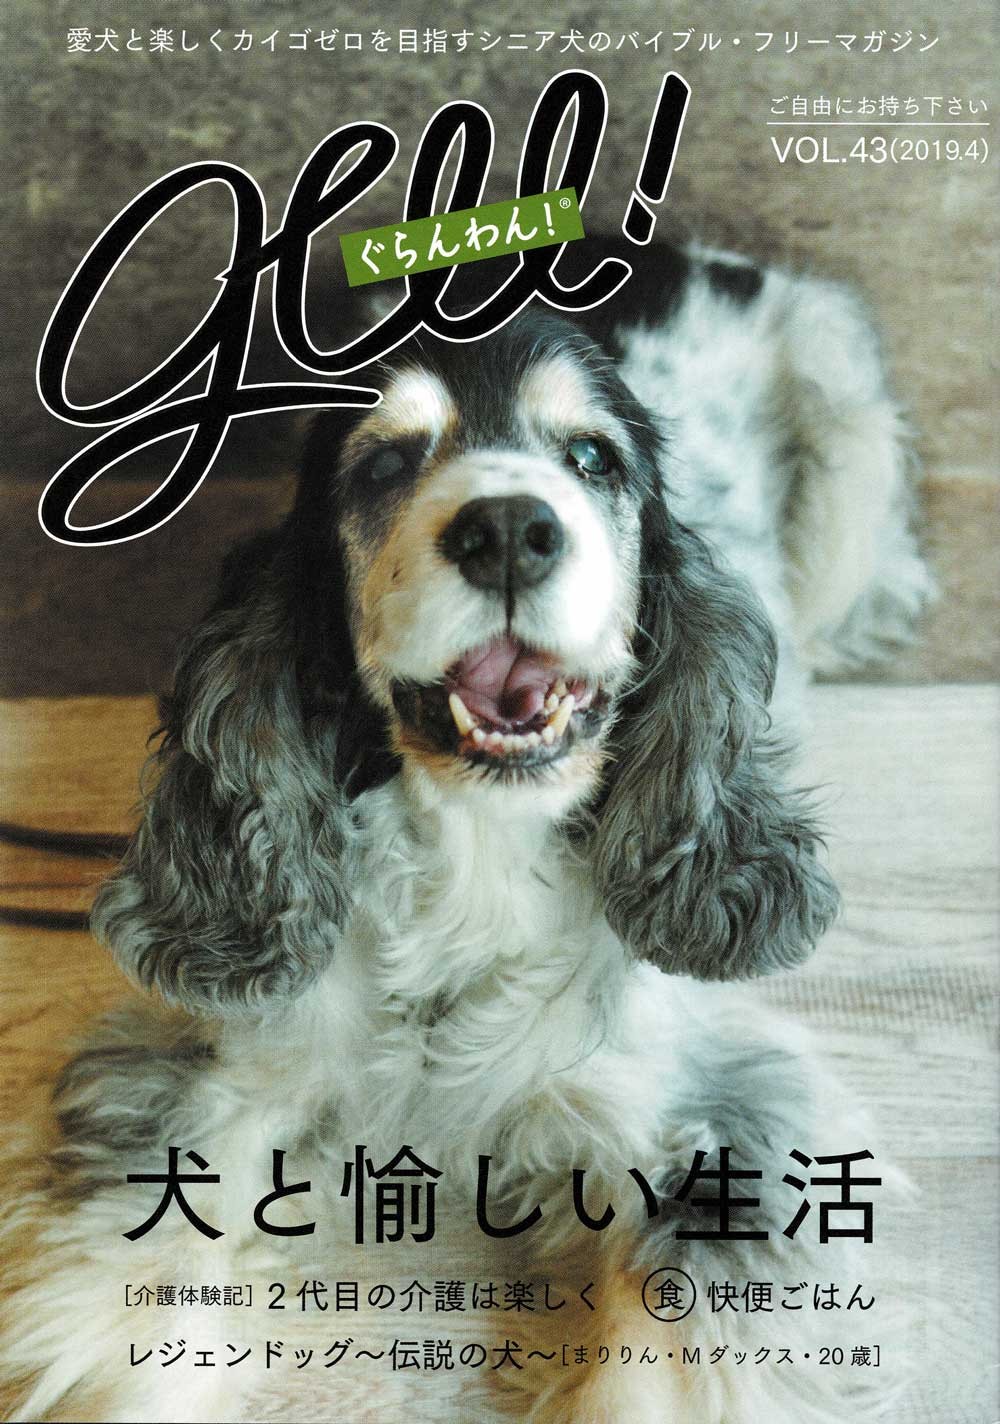 『AERA』による猫に特化した増刊老犬・シニア犬を応援するフリーマガジン
｢ぐらんわん！｣様に掲載されました 